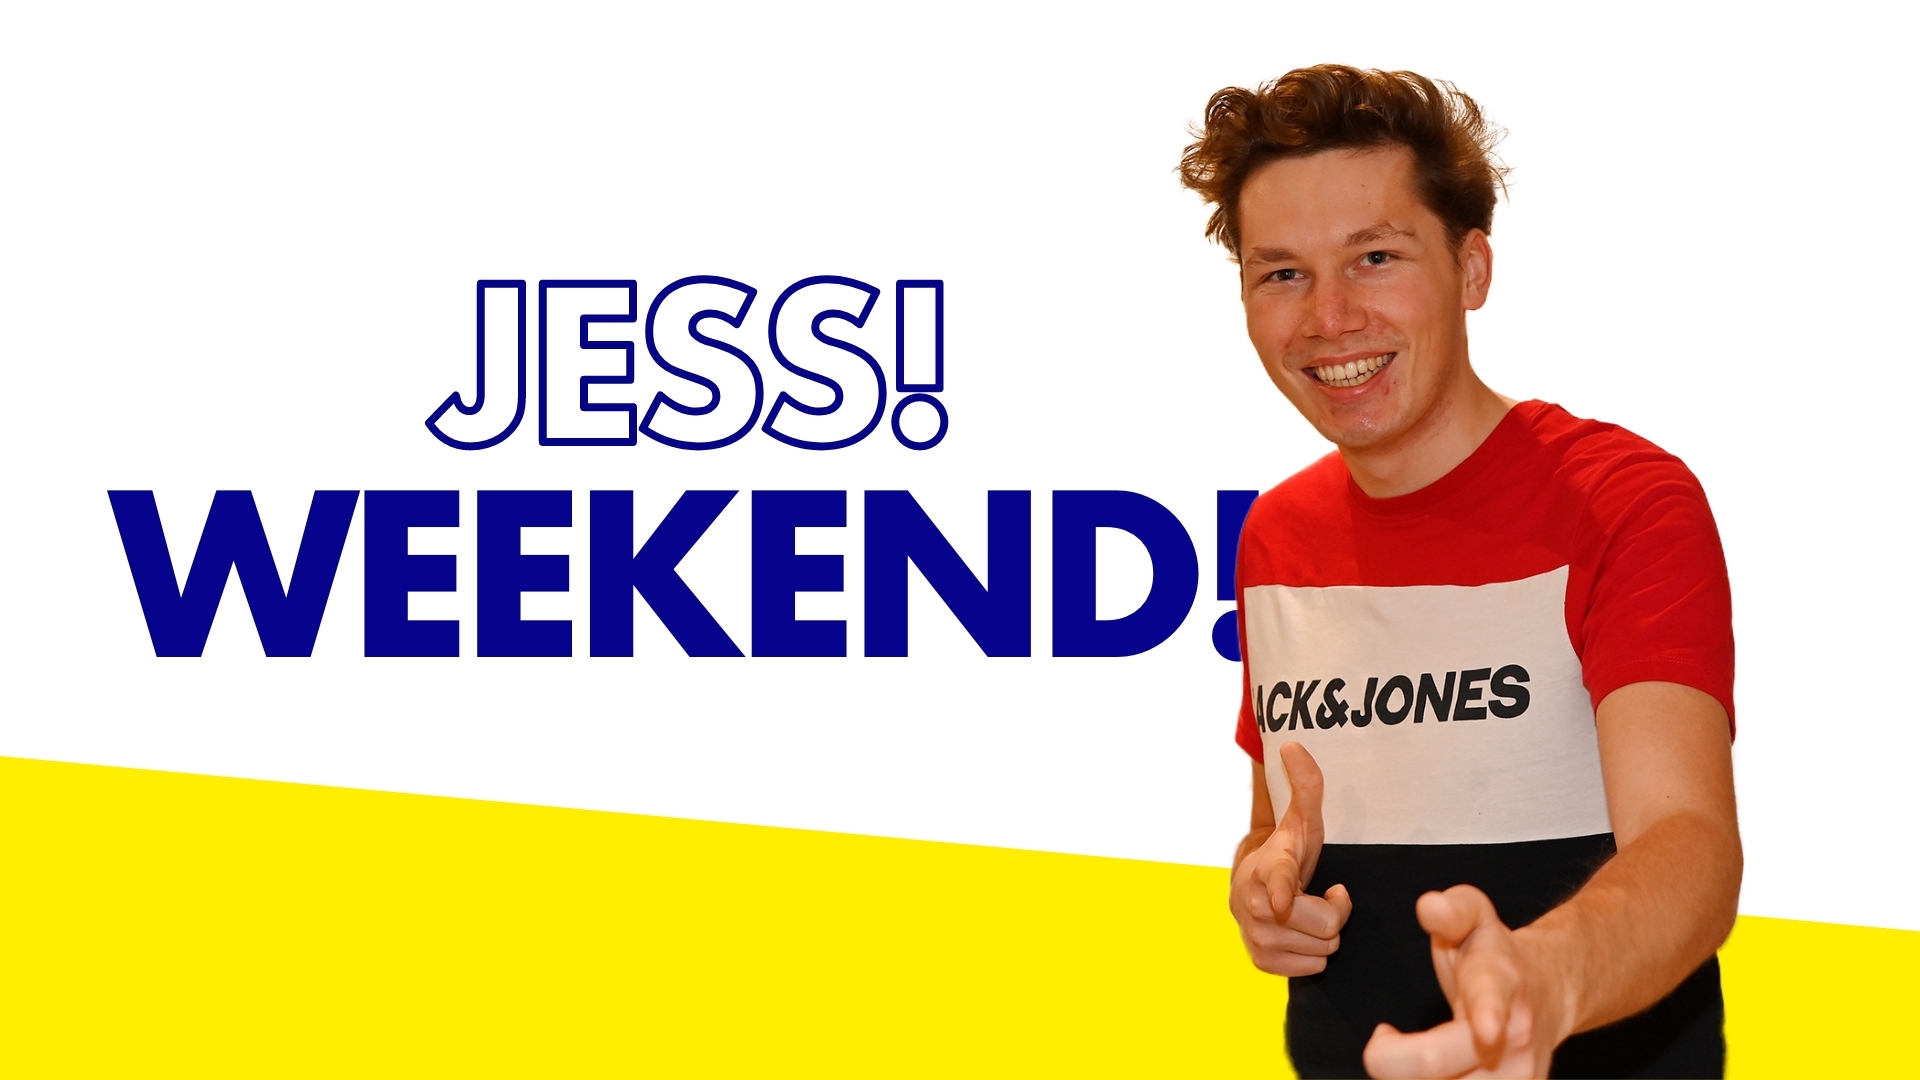 Jess! Weekend!